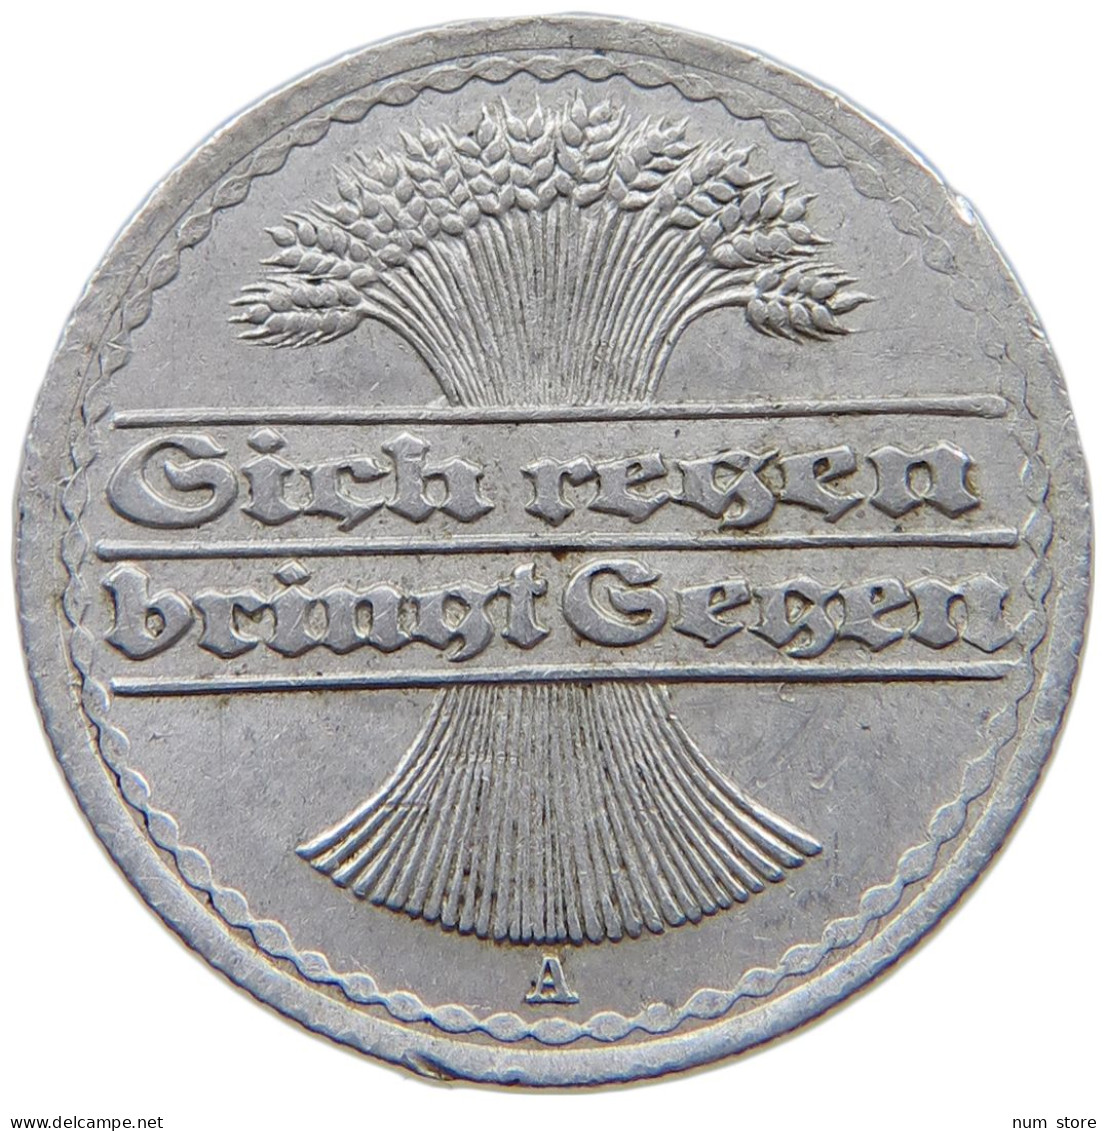 WEIMARER REPUBLIK 50 PFENNIG 1919 A  #a089 0023 - 50 Rentenpfennig & 50 Reichspfennig